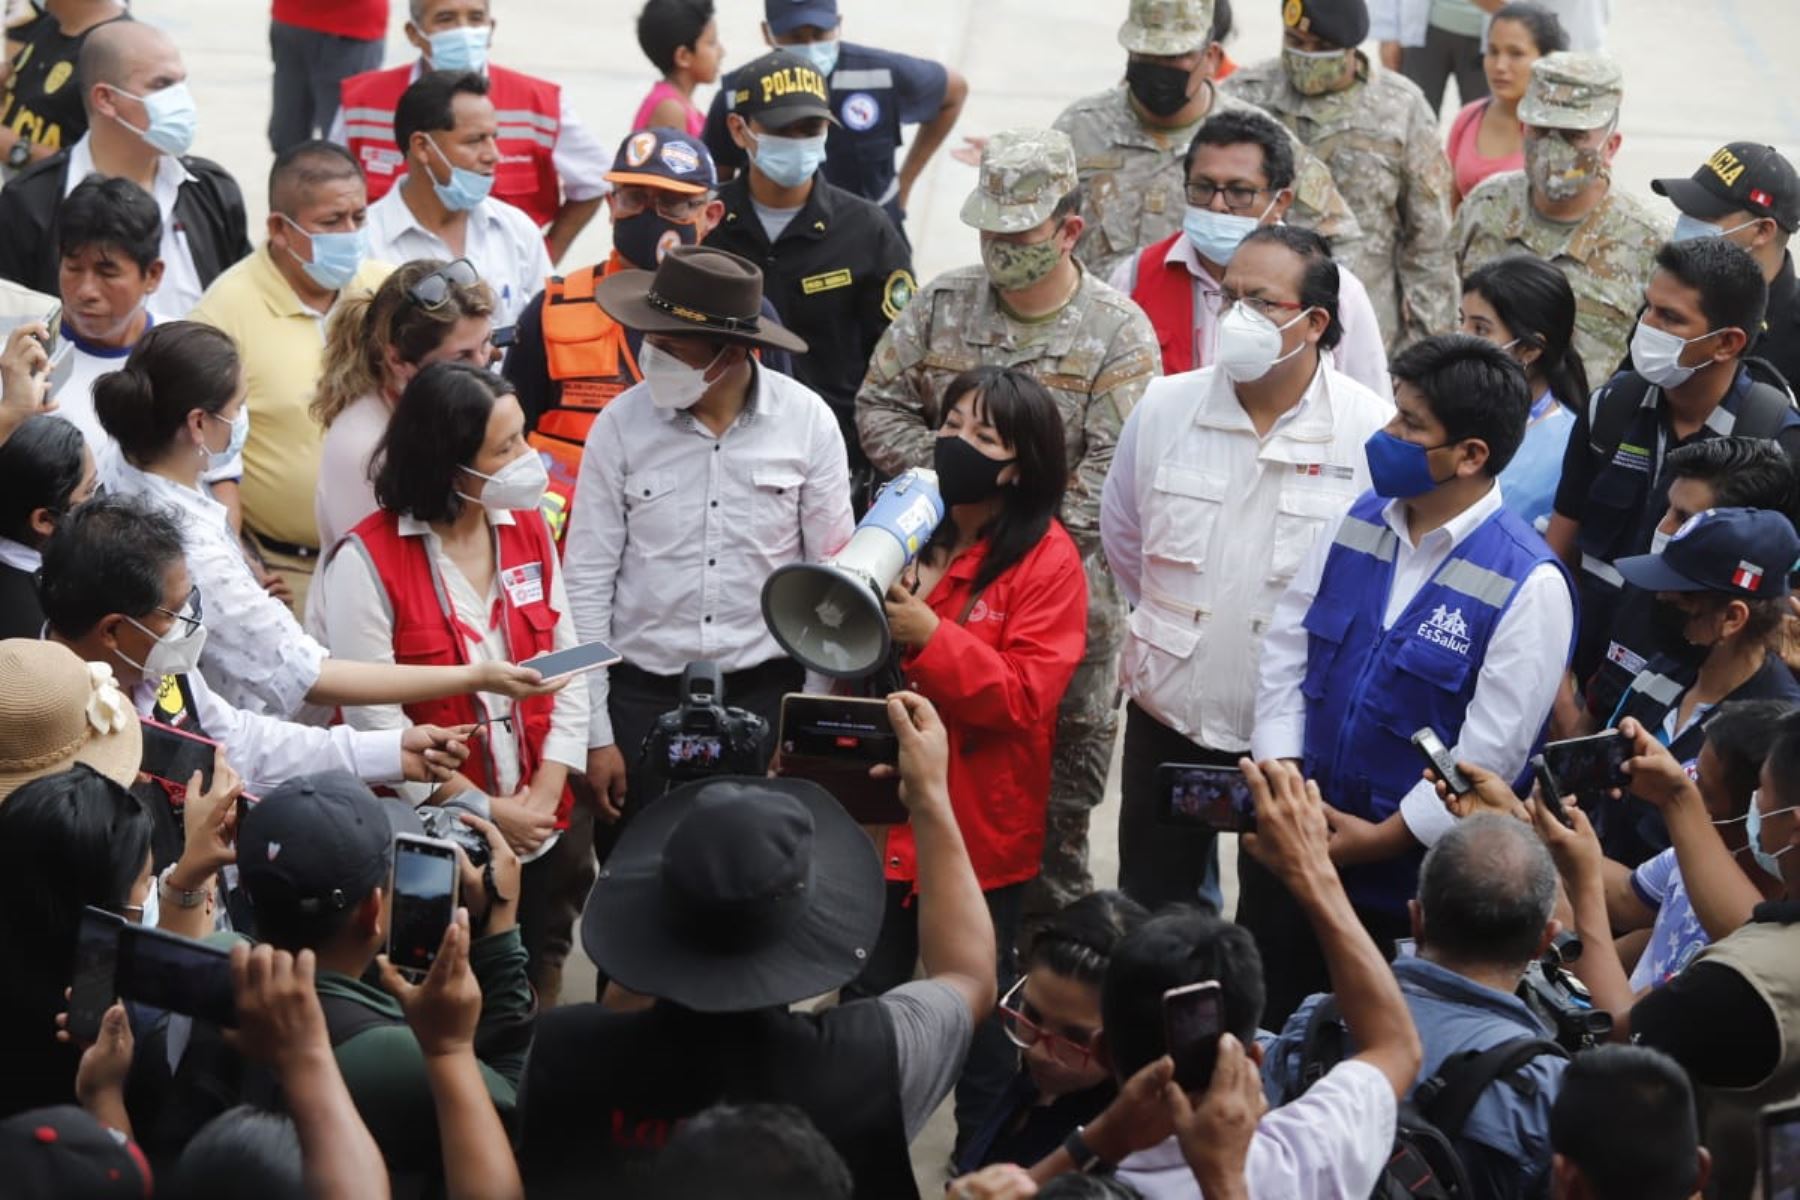 La premier Mirtha Vásquez junto a ministros de Estado llegaron a Santa María de Nieva, en Amazonas, para evaluar daños y disponer acciones de apoyo a afectados por sismo. Foto: PCM